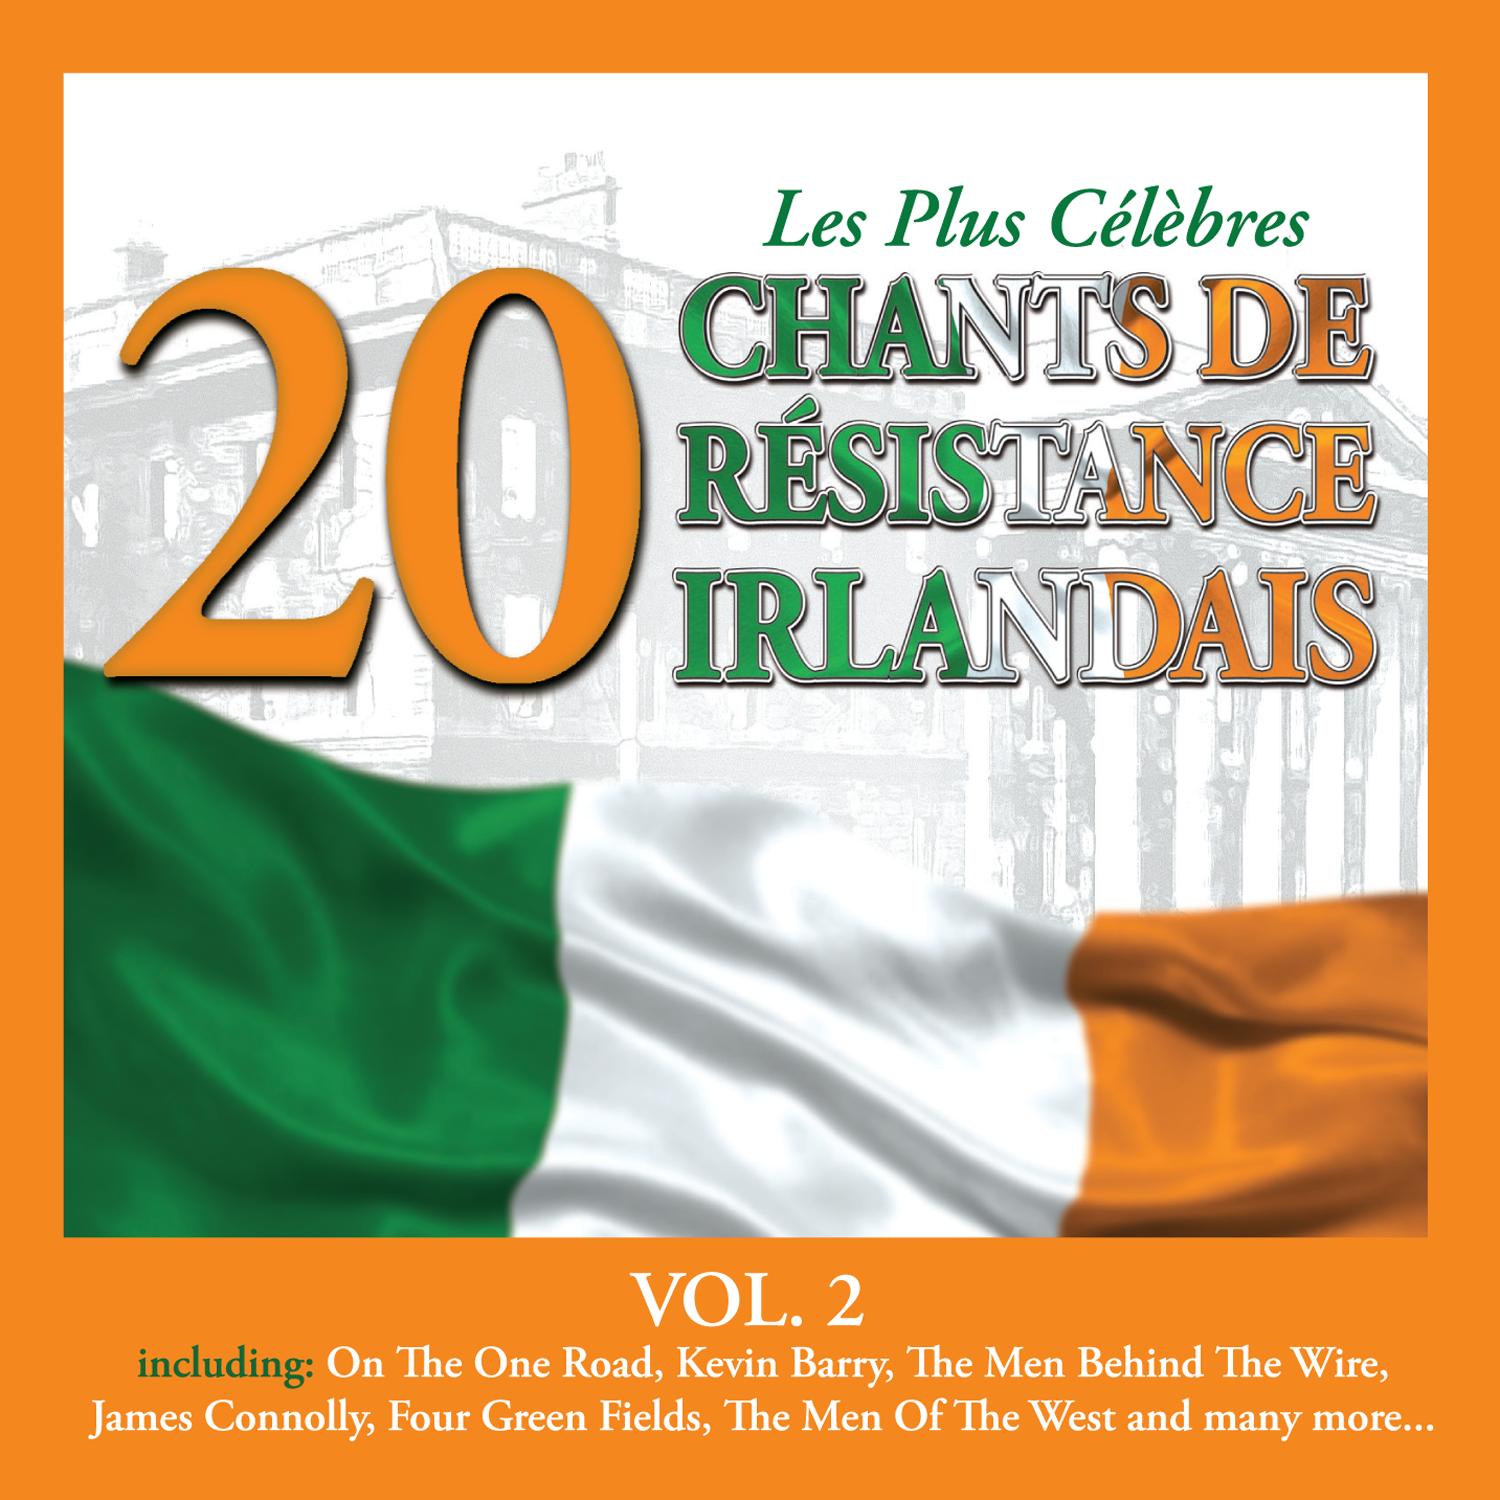 Les Plus Ce le bres Chants de Re sistance Irlandais, Vol. 2  20 Titres